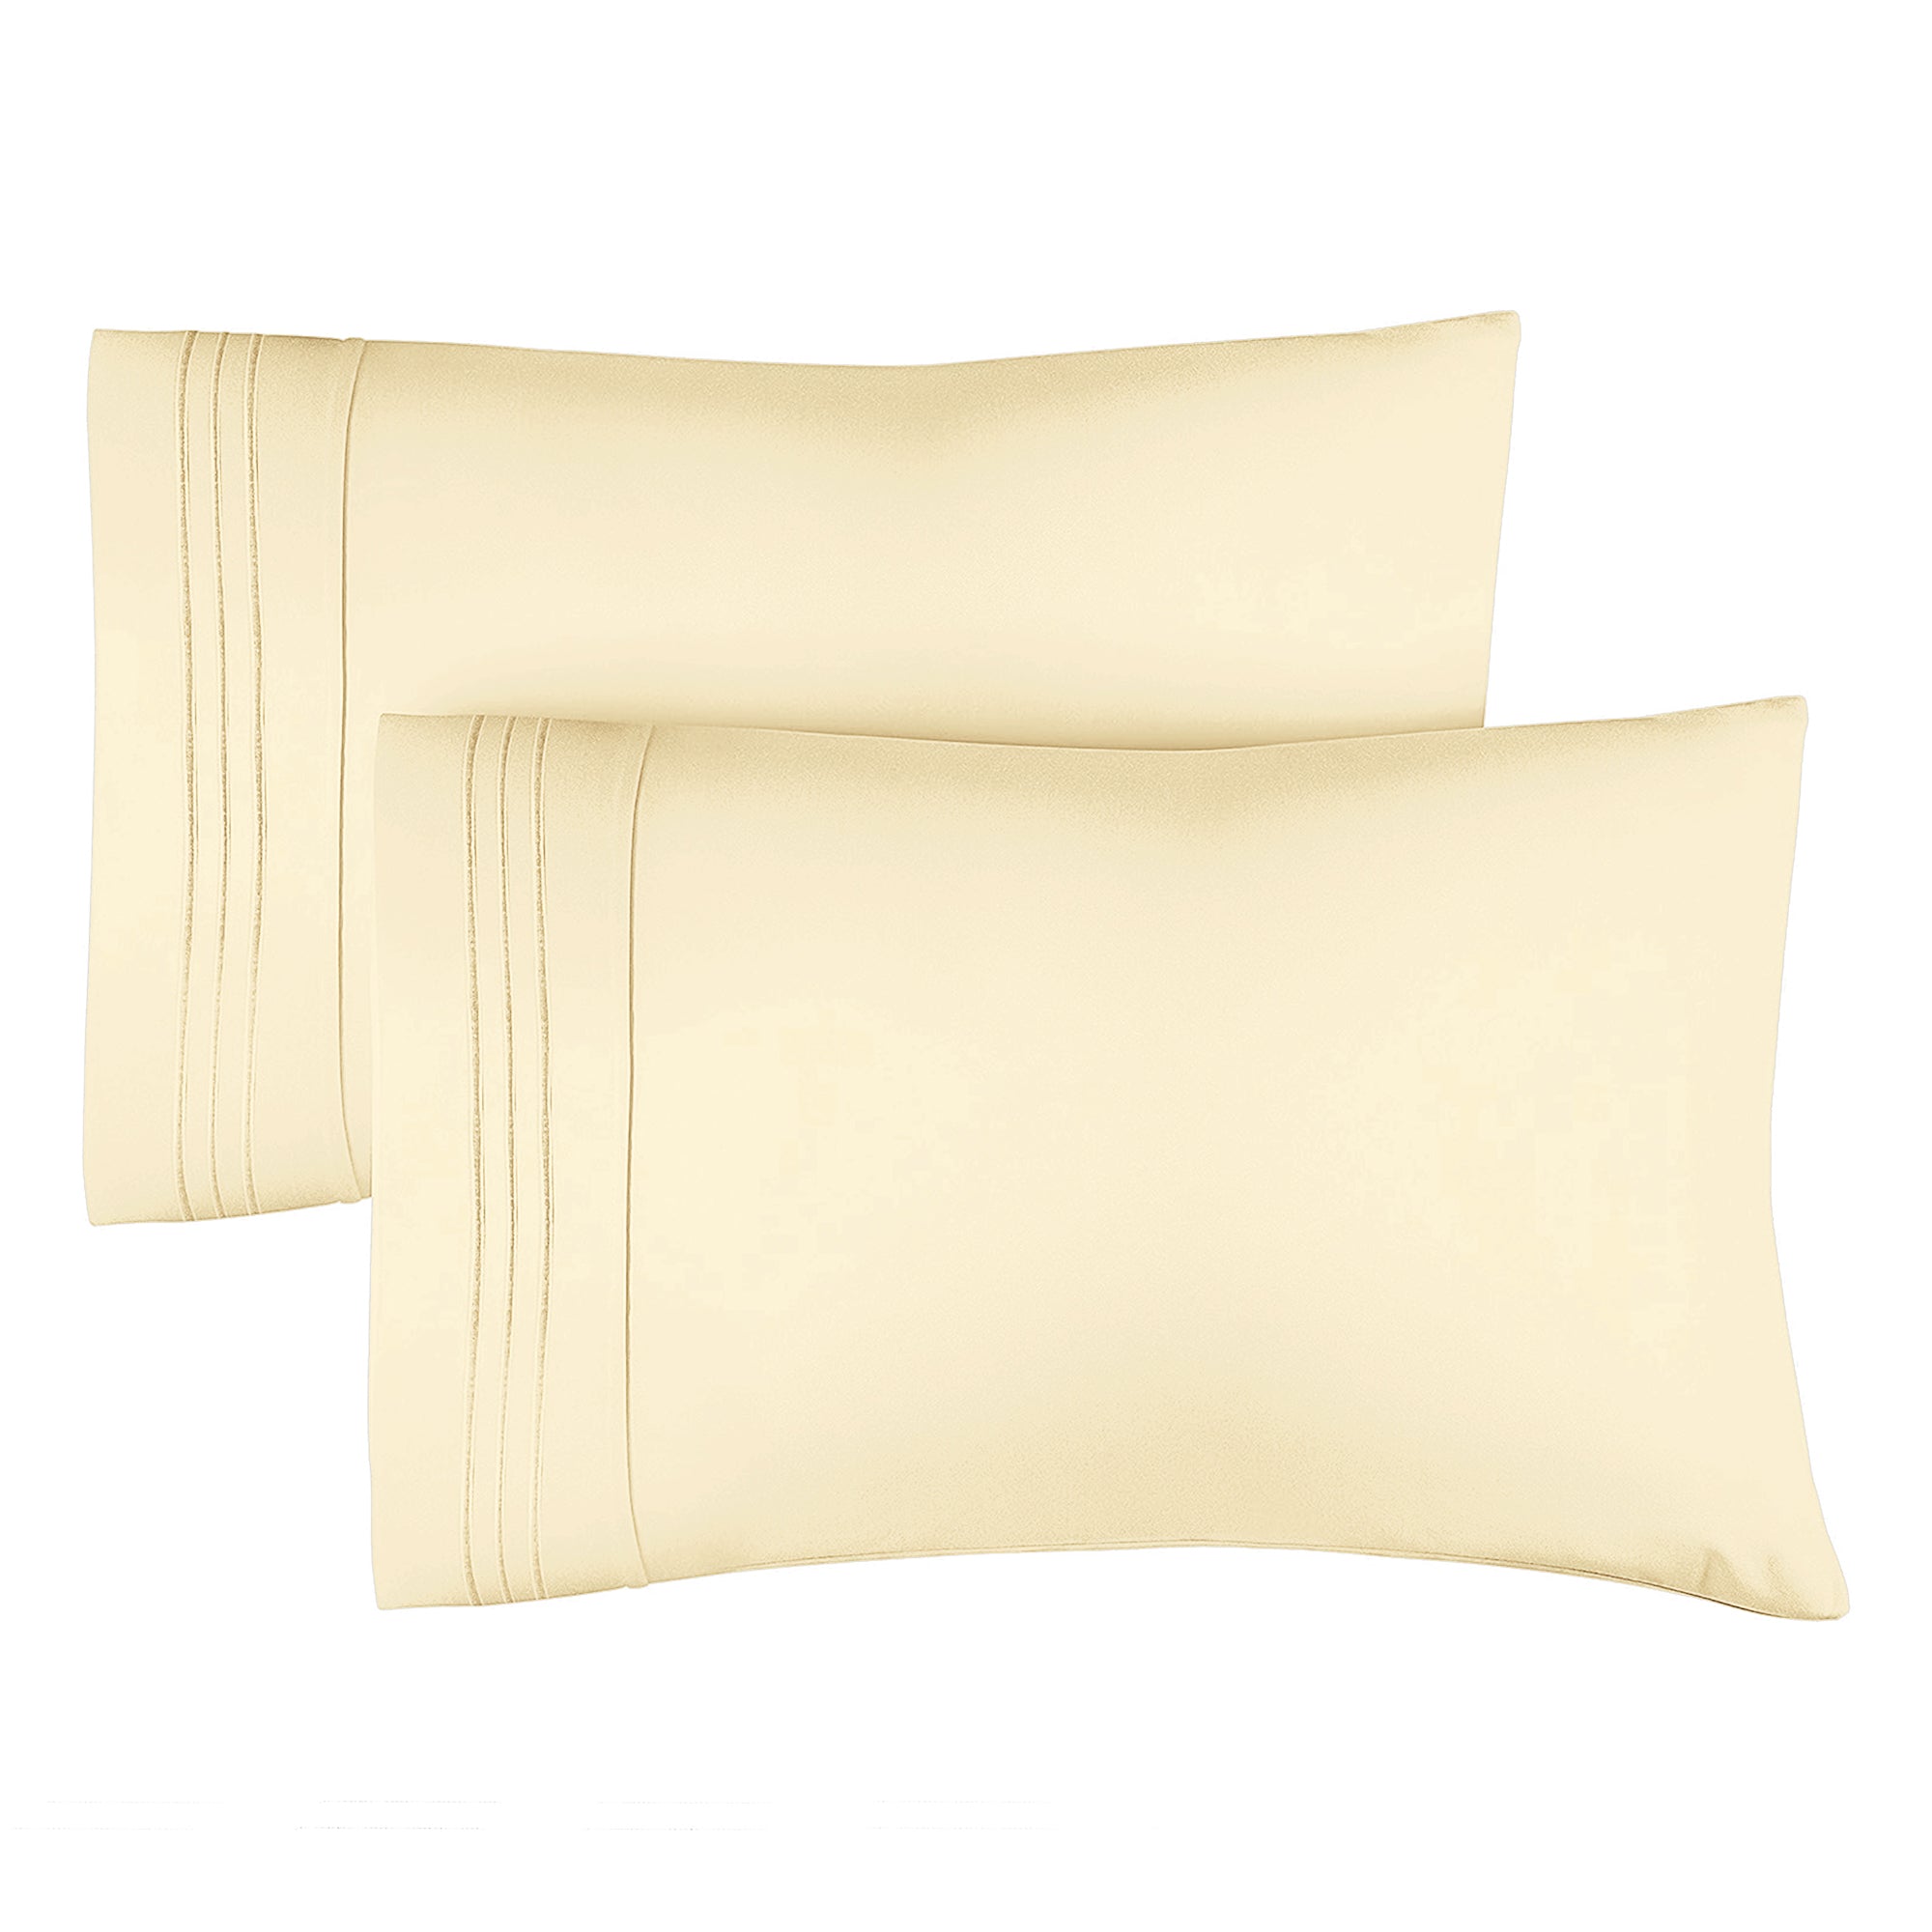 tes 2 Pillowcase Set - Off White